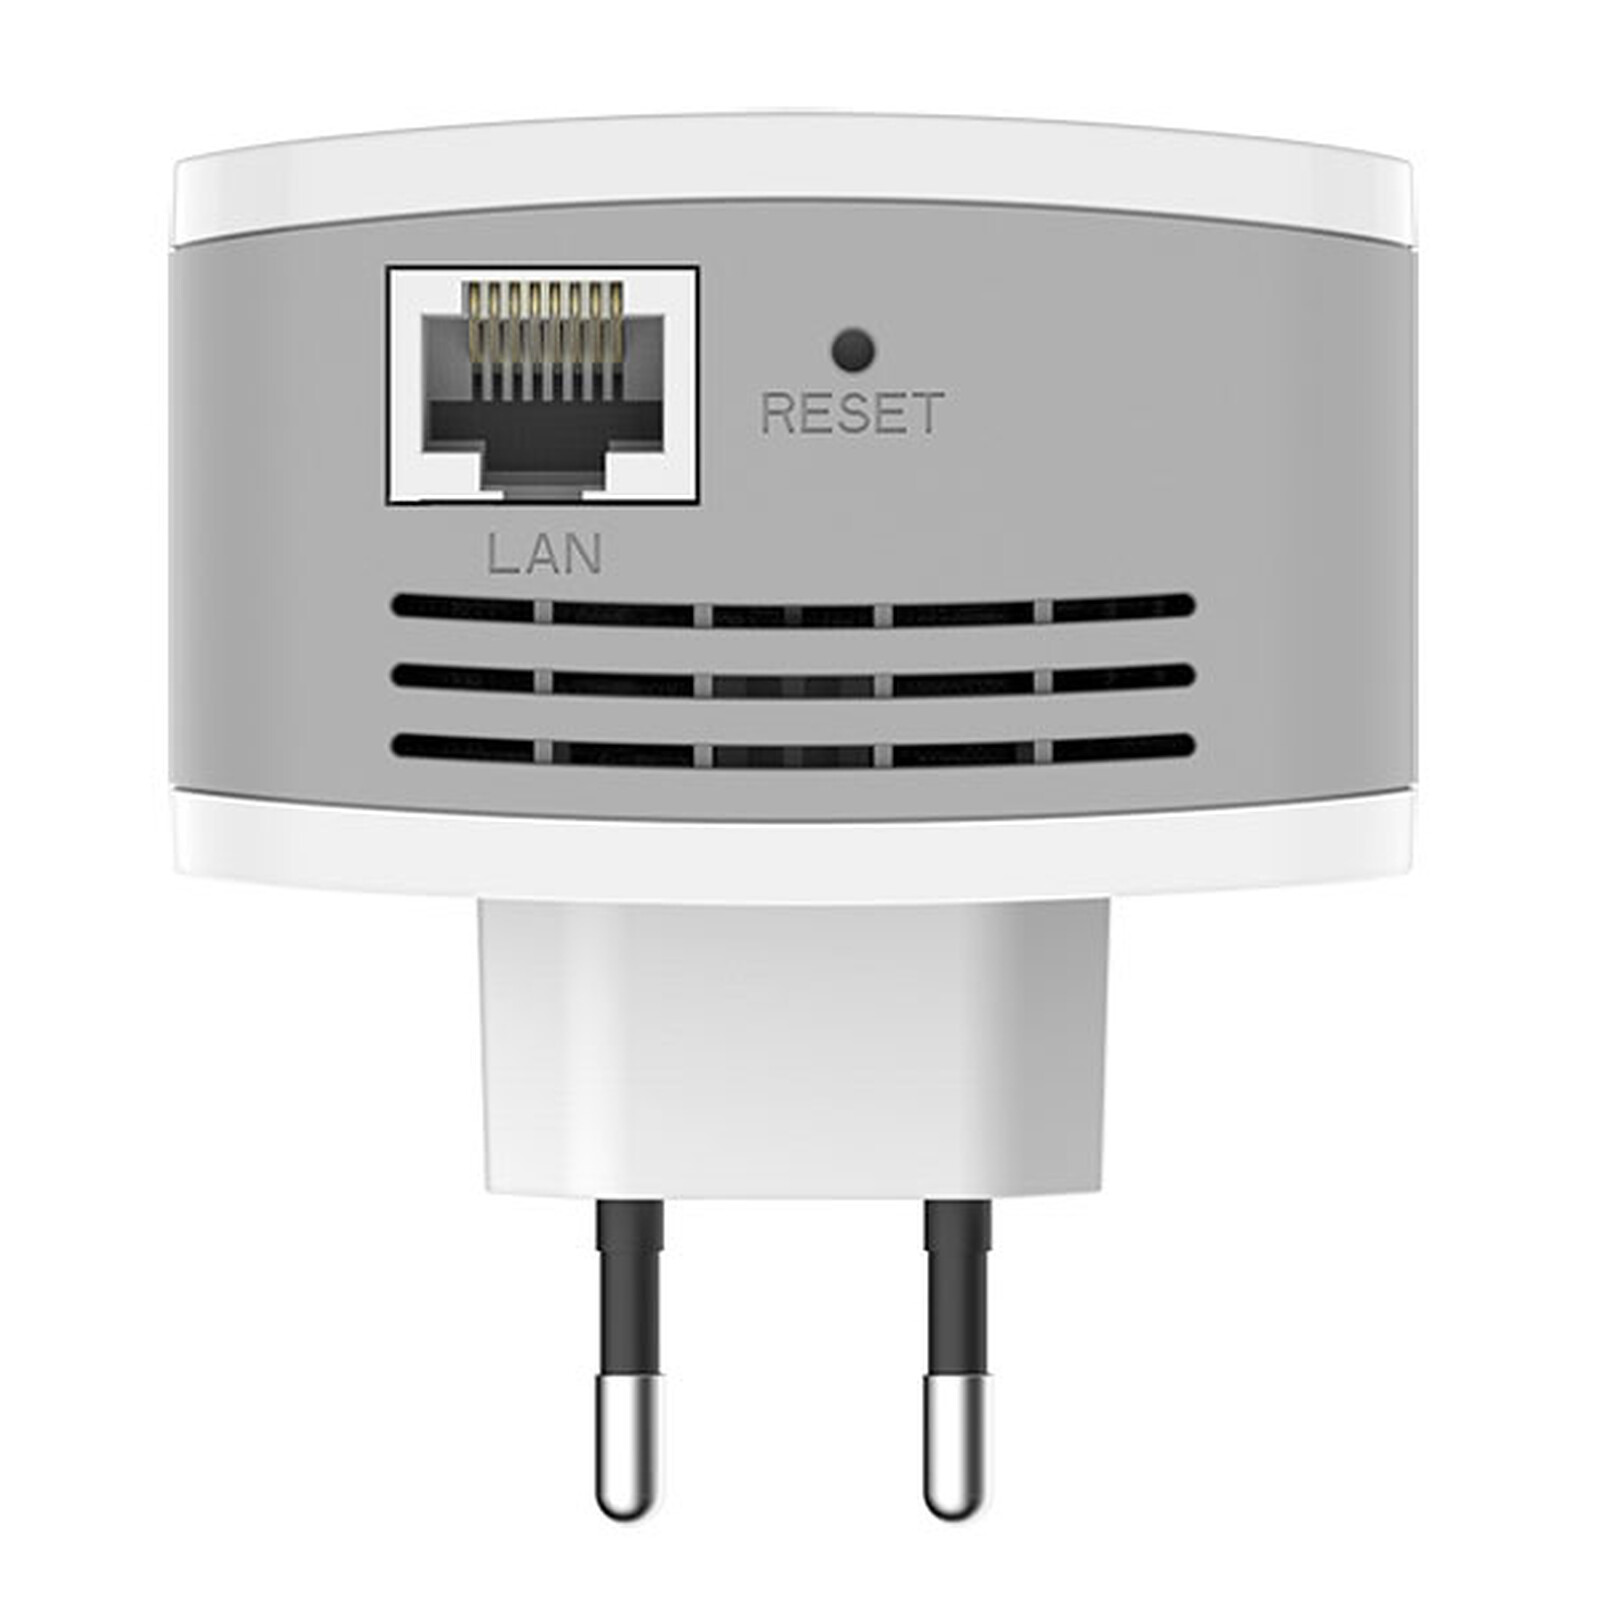 D-Link DAP-1610 - Répéteur Wi-Fi - Garantie 3 ans LDLC